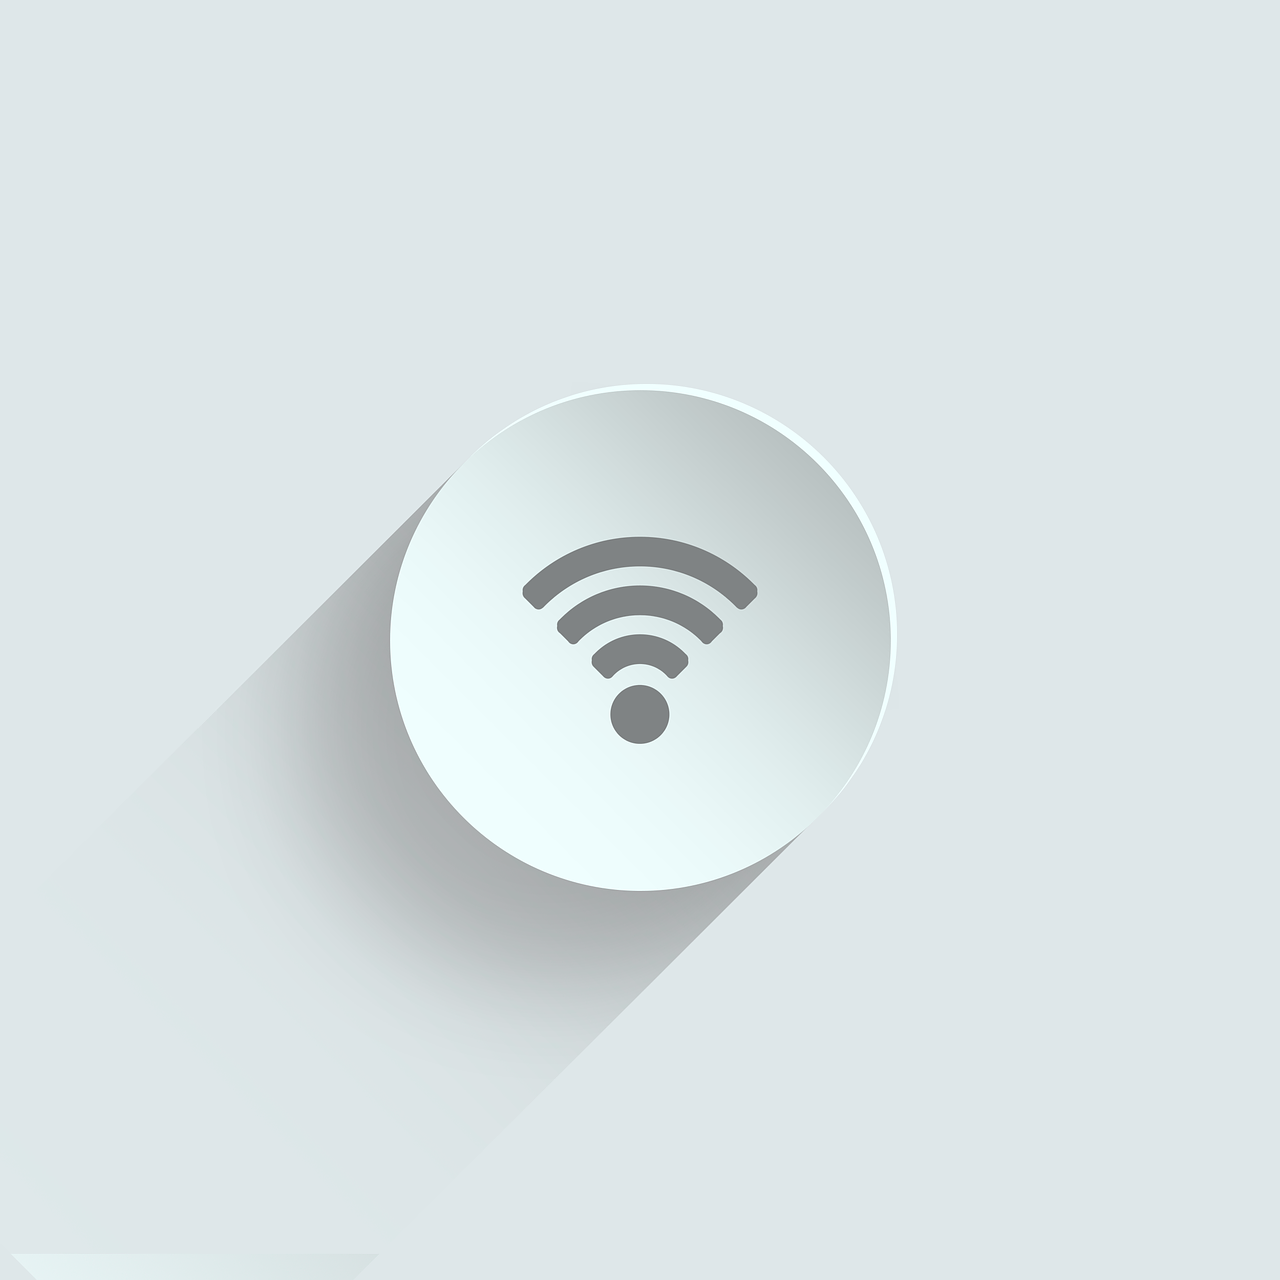 ¿Cómo puedo monitorear mi red WiFi?